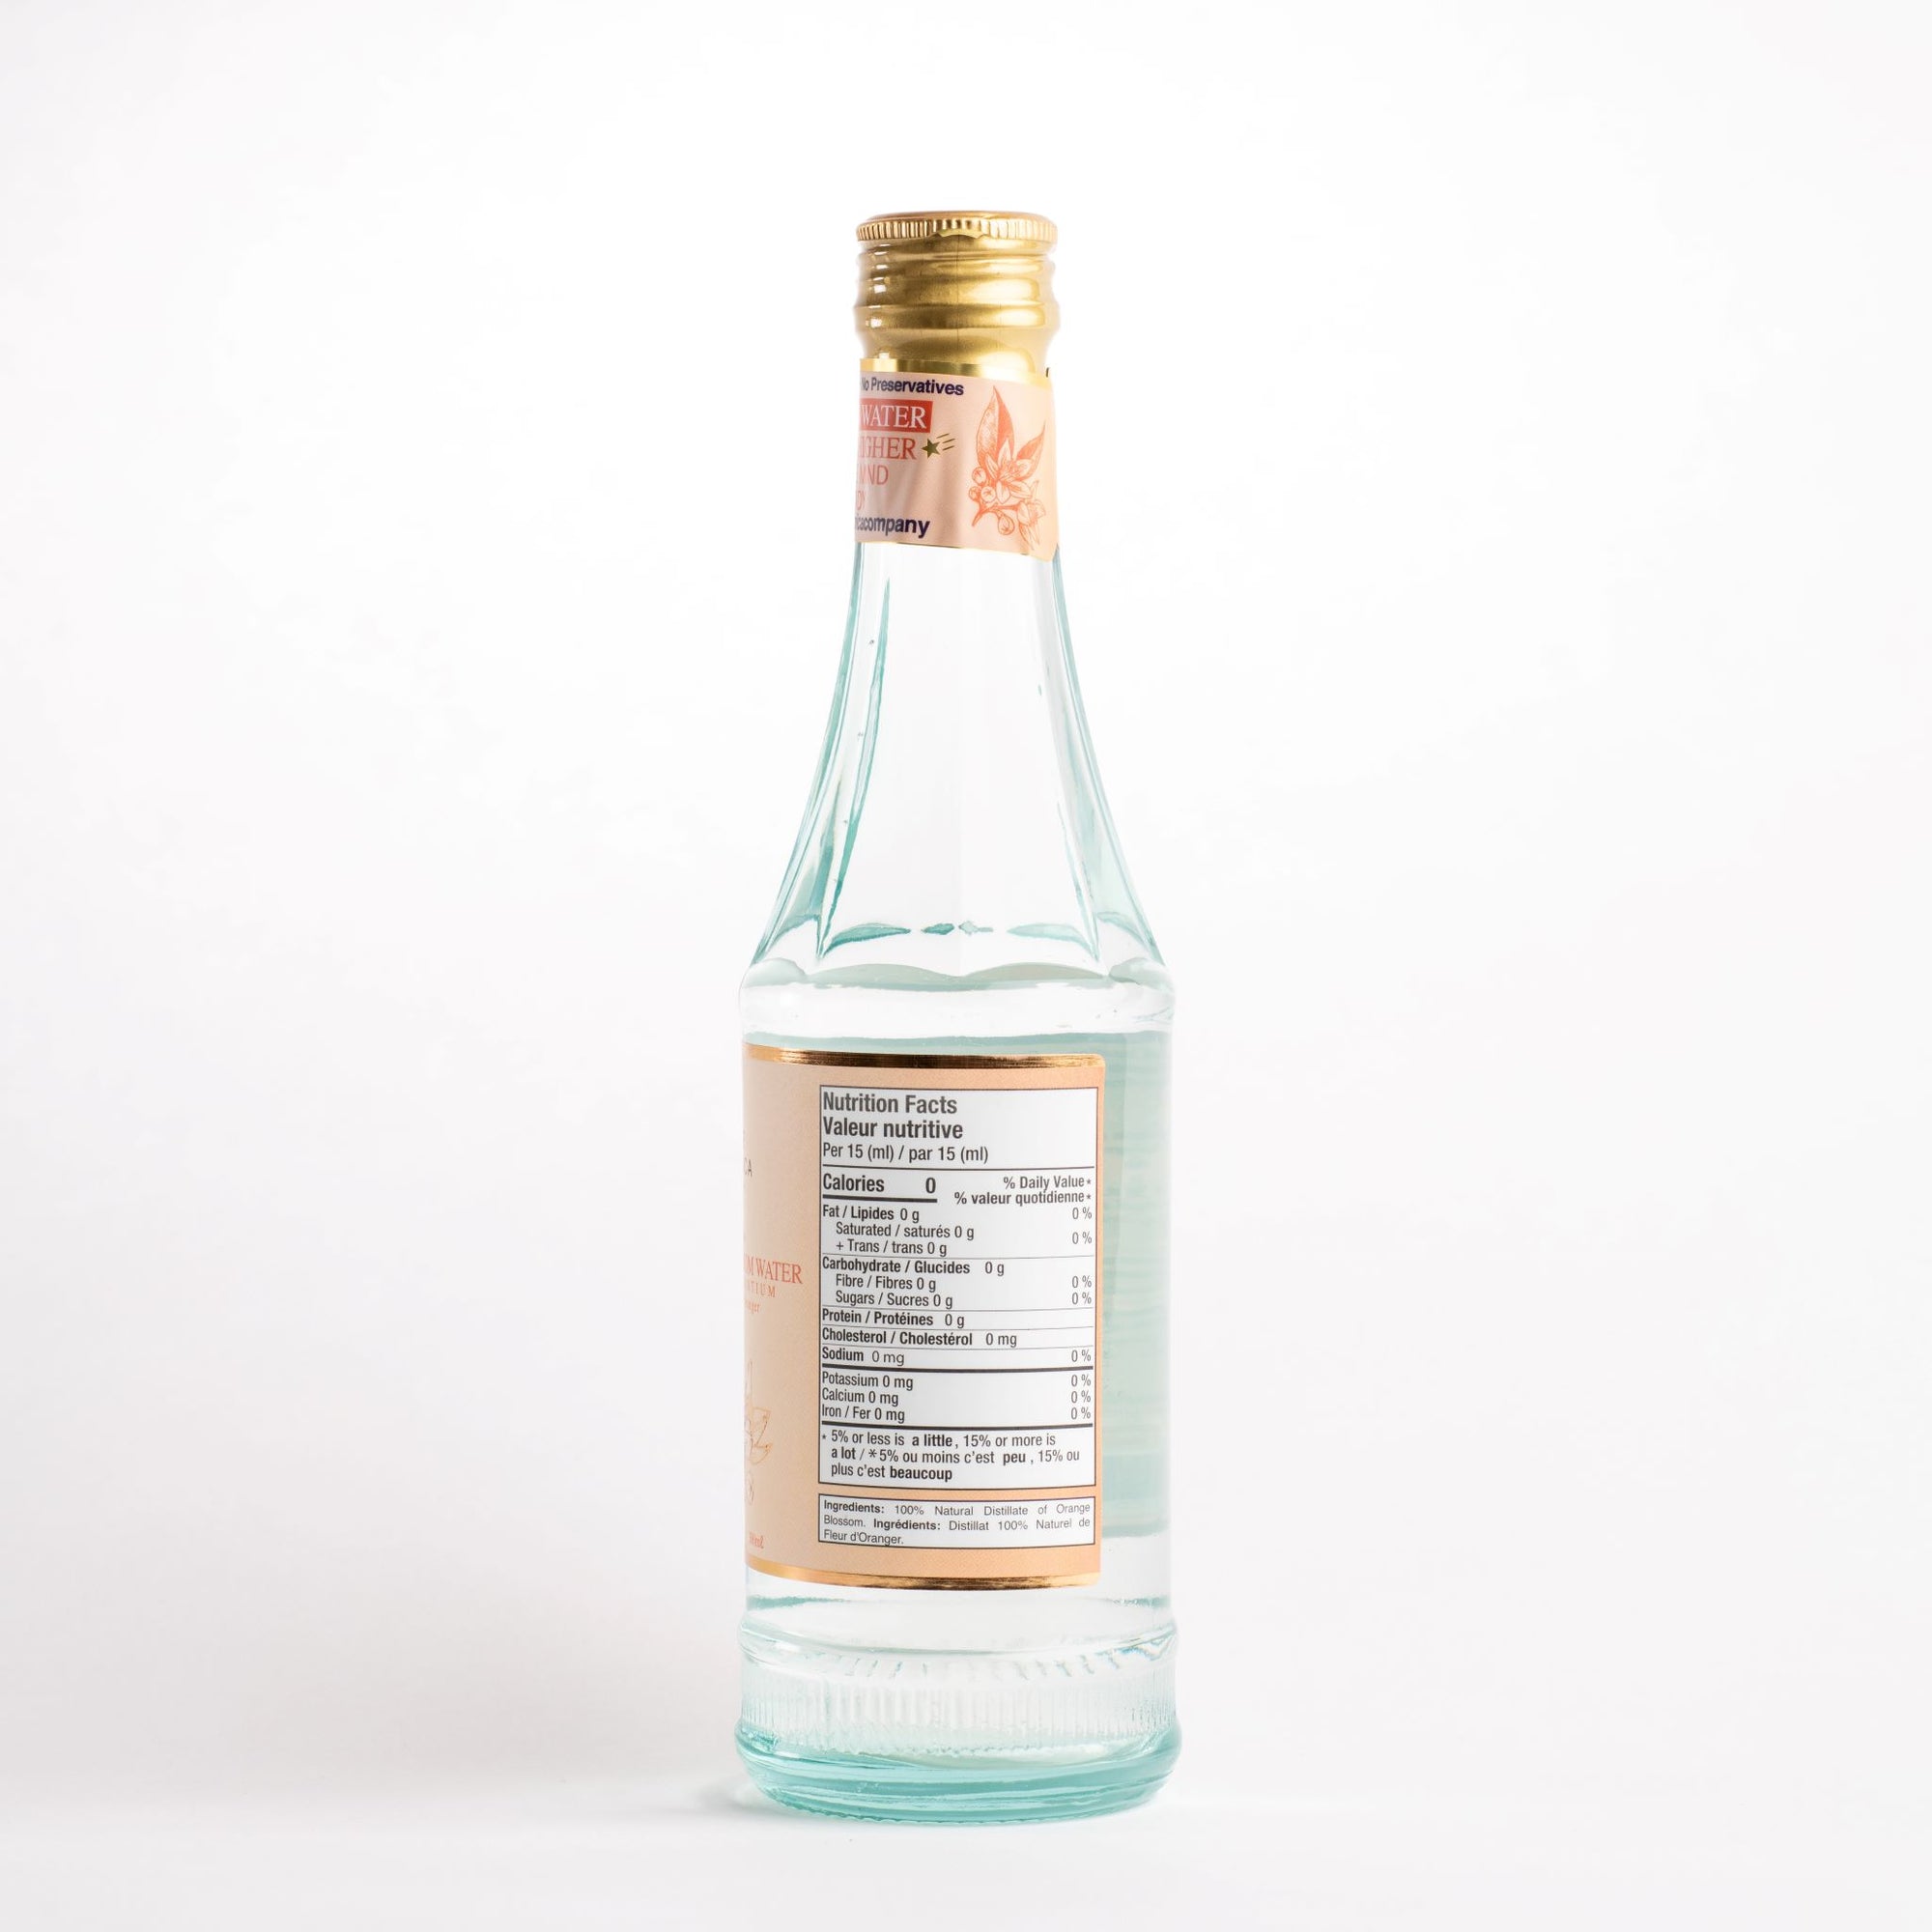 Soothe Mind + Body: Organic Premium Orange Blossom Water Distillate